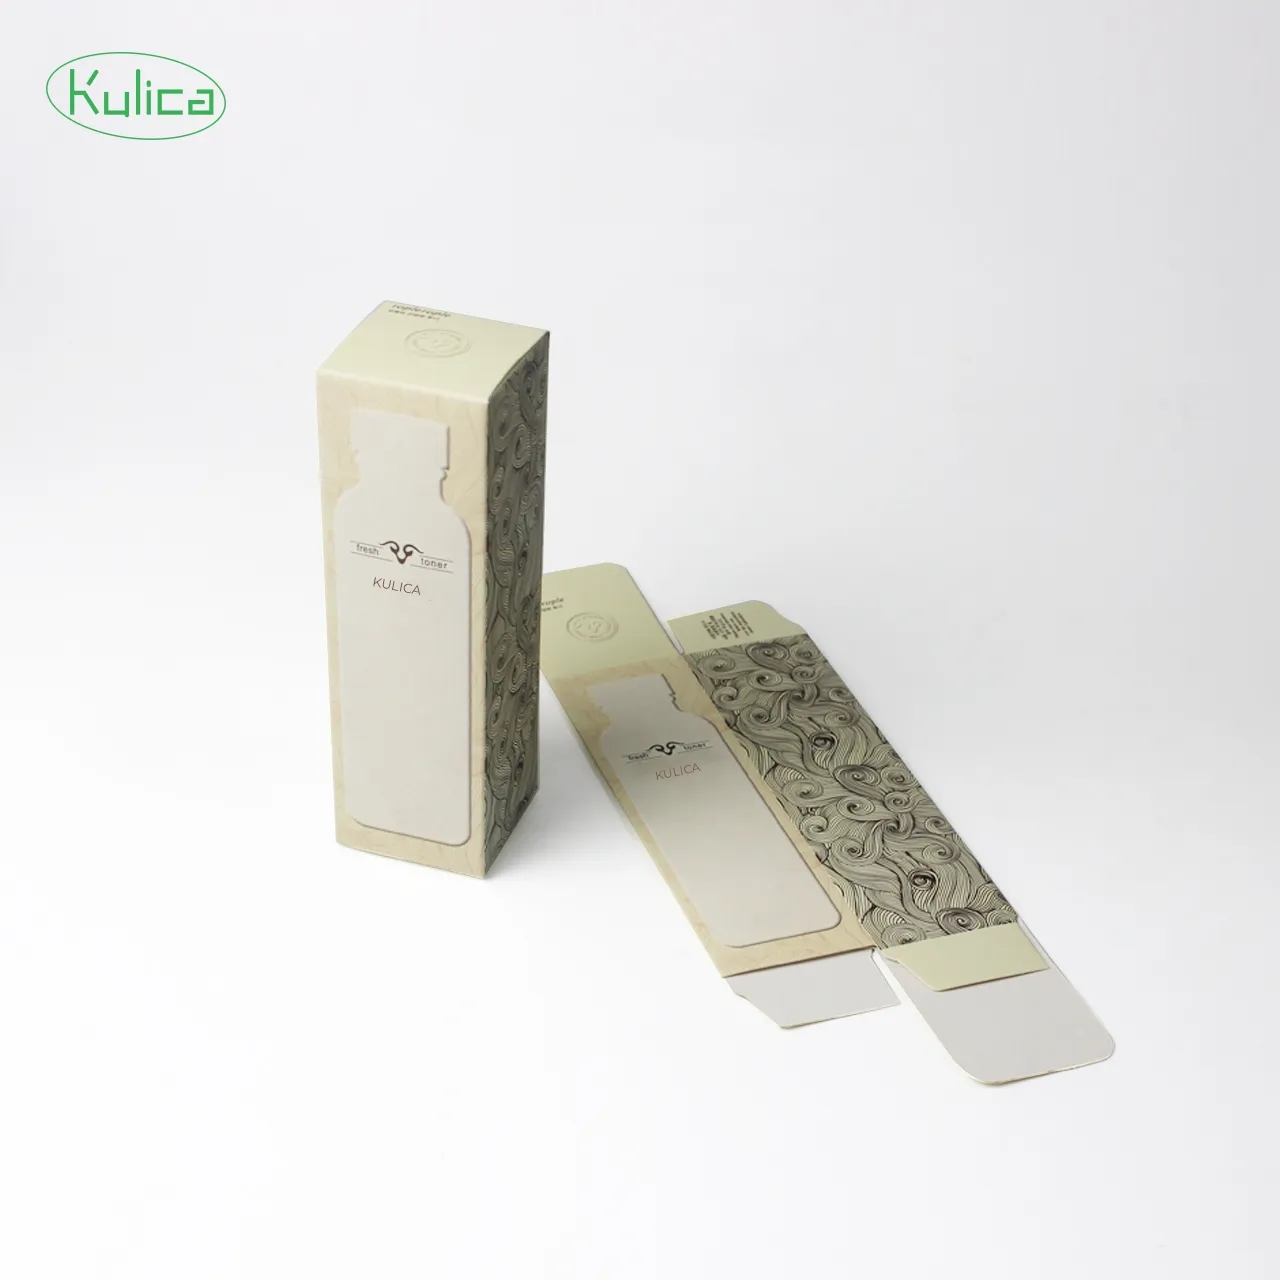 KULICA 사용자 정의 로고 인쇄 개인화 된 메이크업 화장품 립 글로스 스킨 케어 포장 상자 화장품 상자